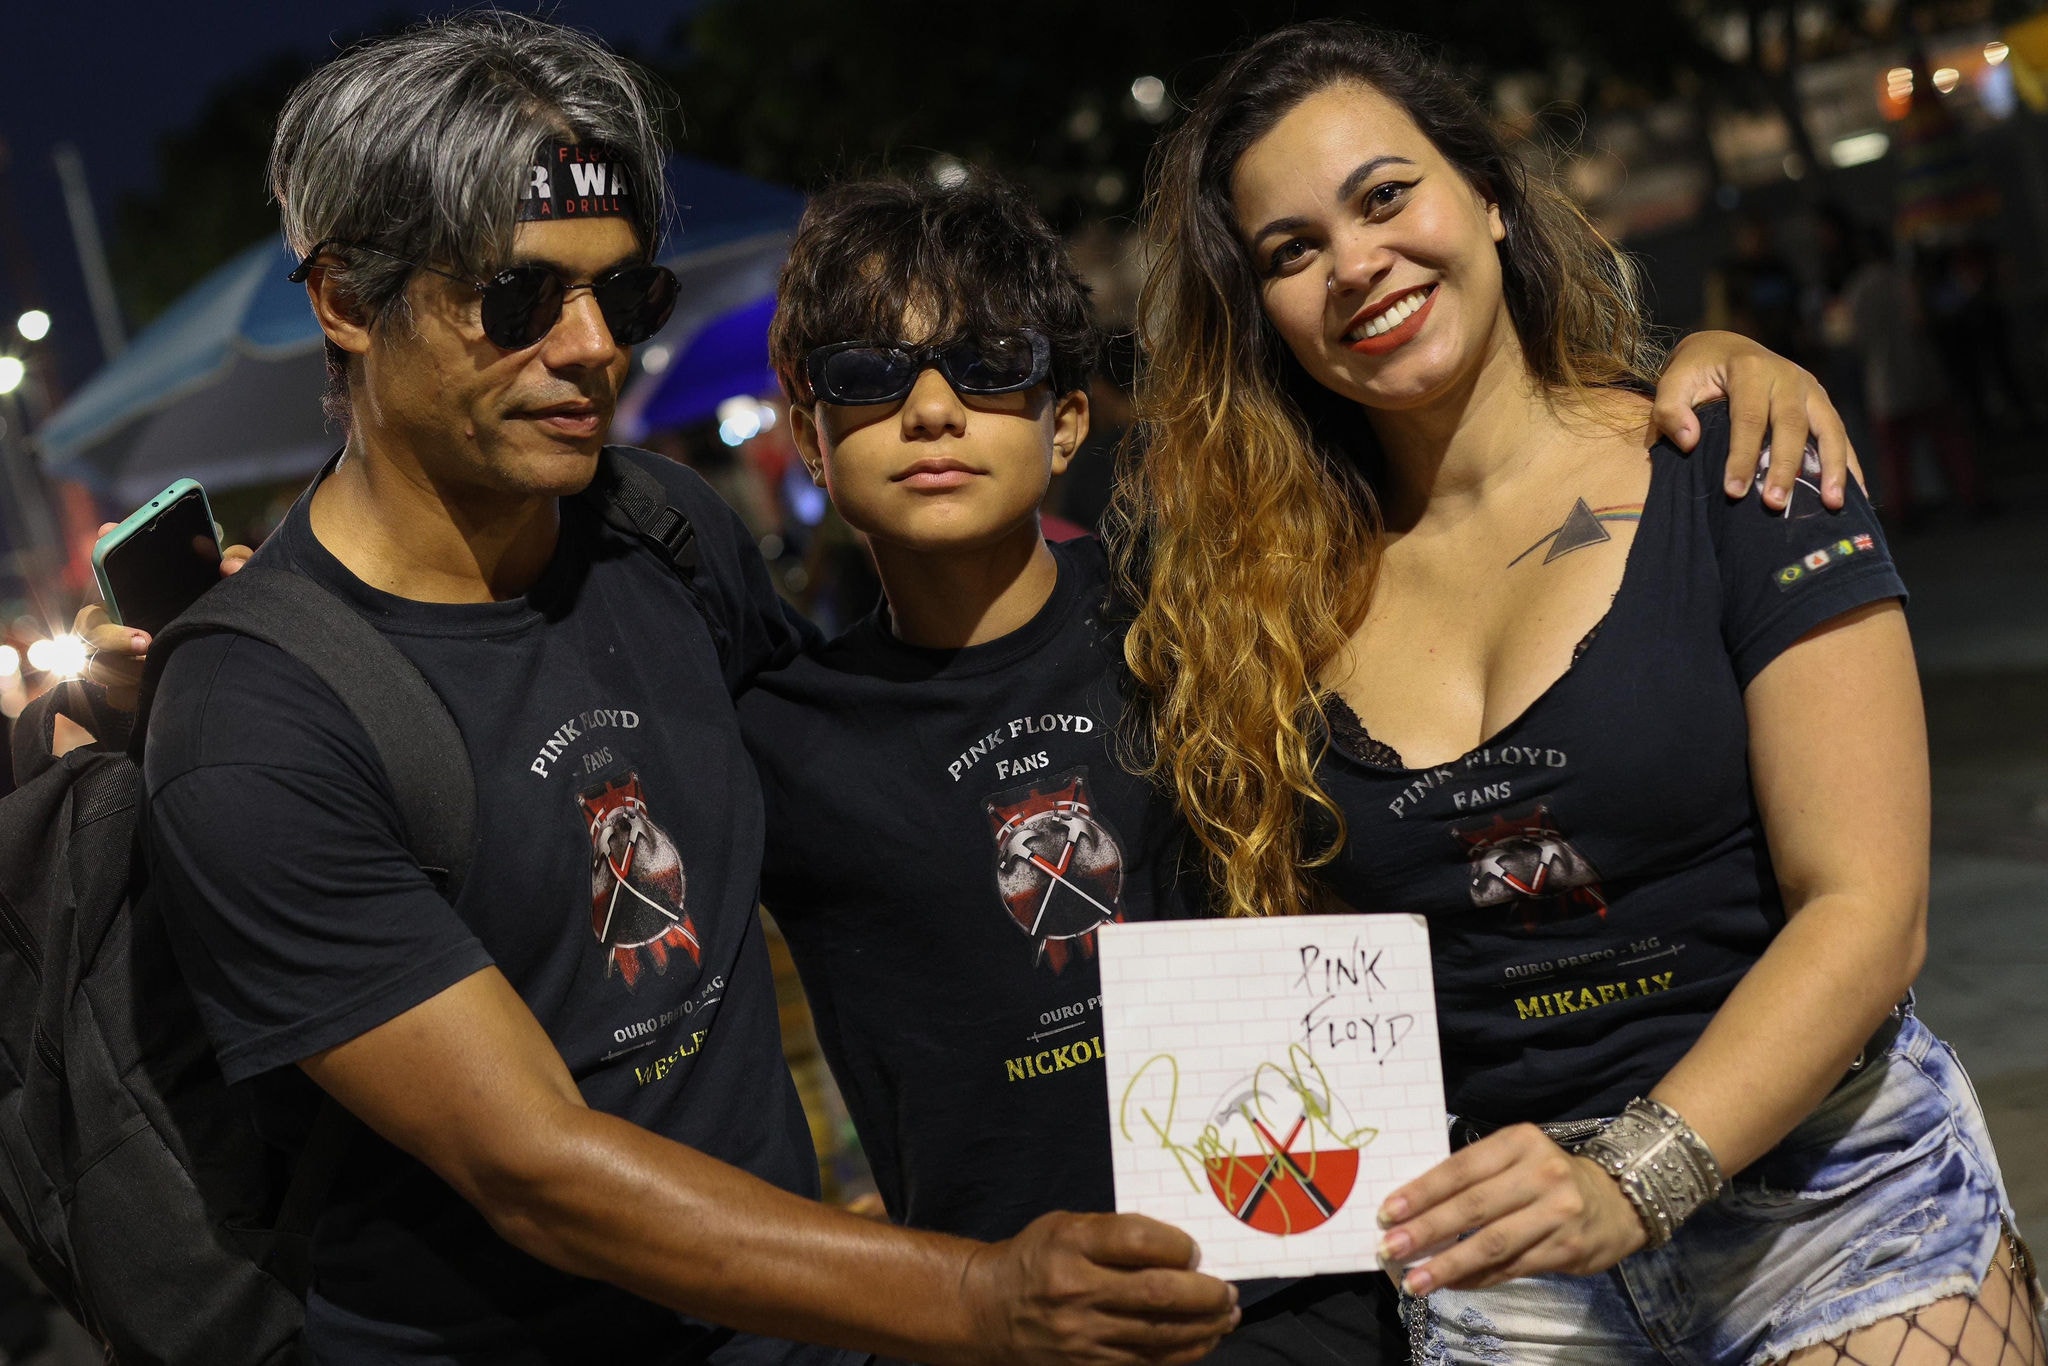 Wesley Cristiano de Souza com a esposa Micaela Aparecida de Souza e o filho Nicholas aguardam no Mineirão para o show de Roger Waters